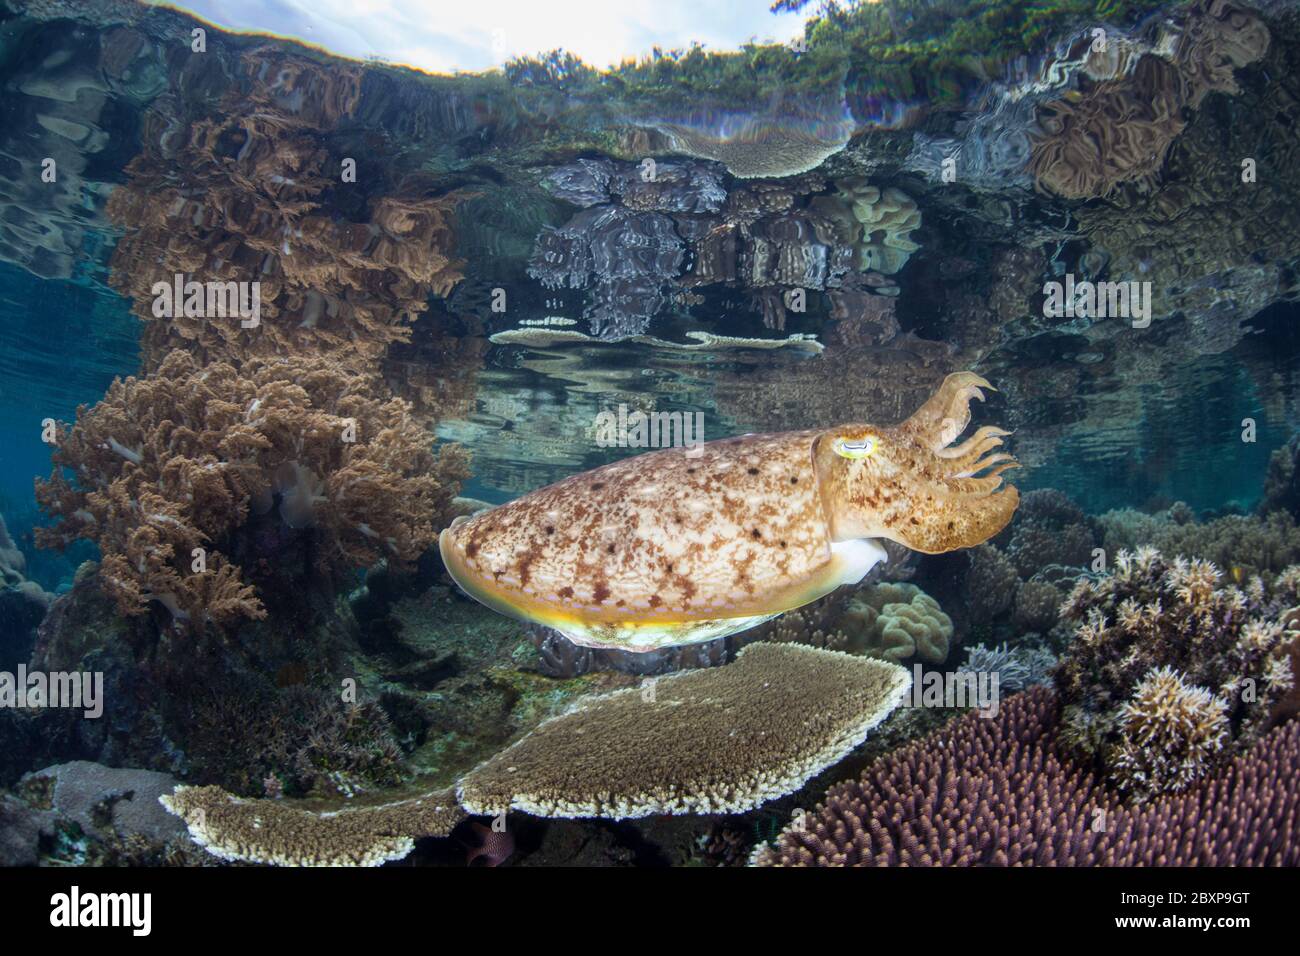 Ein Broadclub-Tintenfisch, Sepia latimanus, schwebt über einem wunderschönen Korallenriff in Raja Ampat. Dieser Teil Indonesiens ist für seine hohe Biodiversität bekannt. Stockfoto